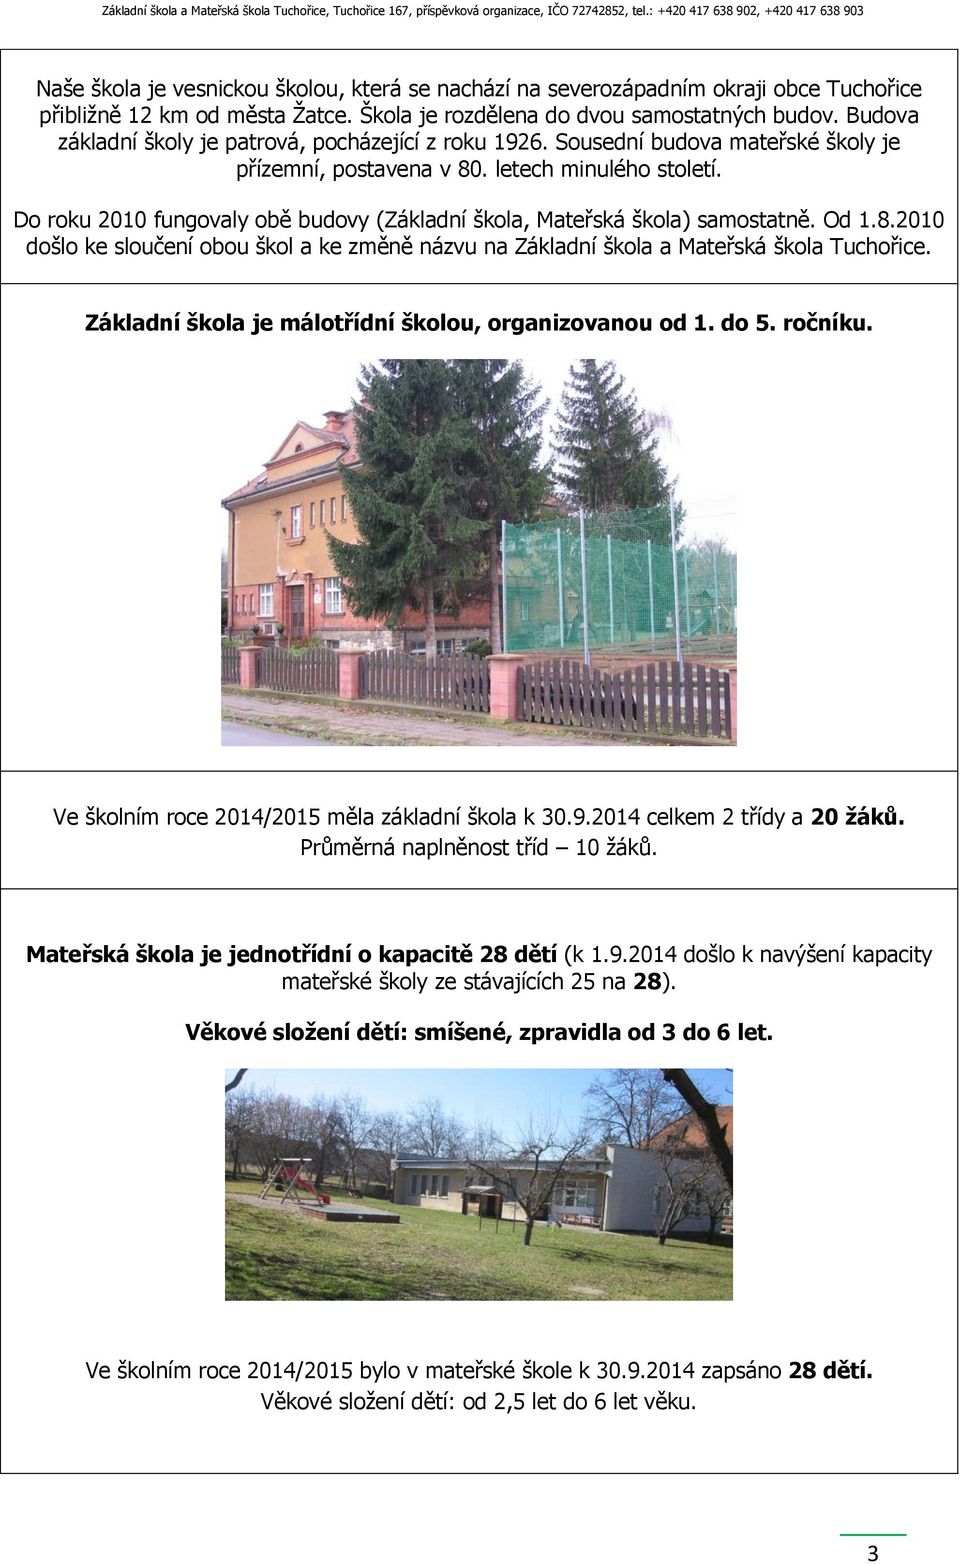 Do roku 2010 fungovaly obě budovy (Základní škola, Mateřská škola) samostatně. Od 1.8.2010 došlo ke sloučení obou škol a ke změně názvu na Základní škola a Mateřská škola Tuchořice.